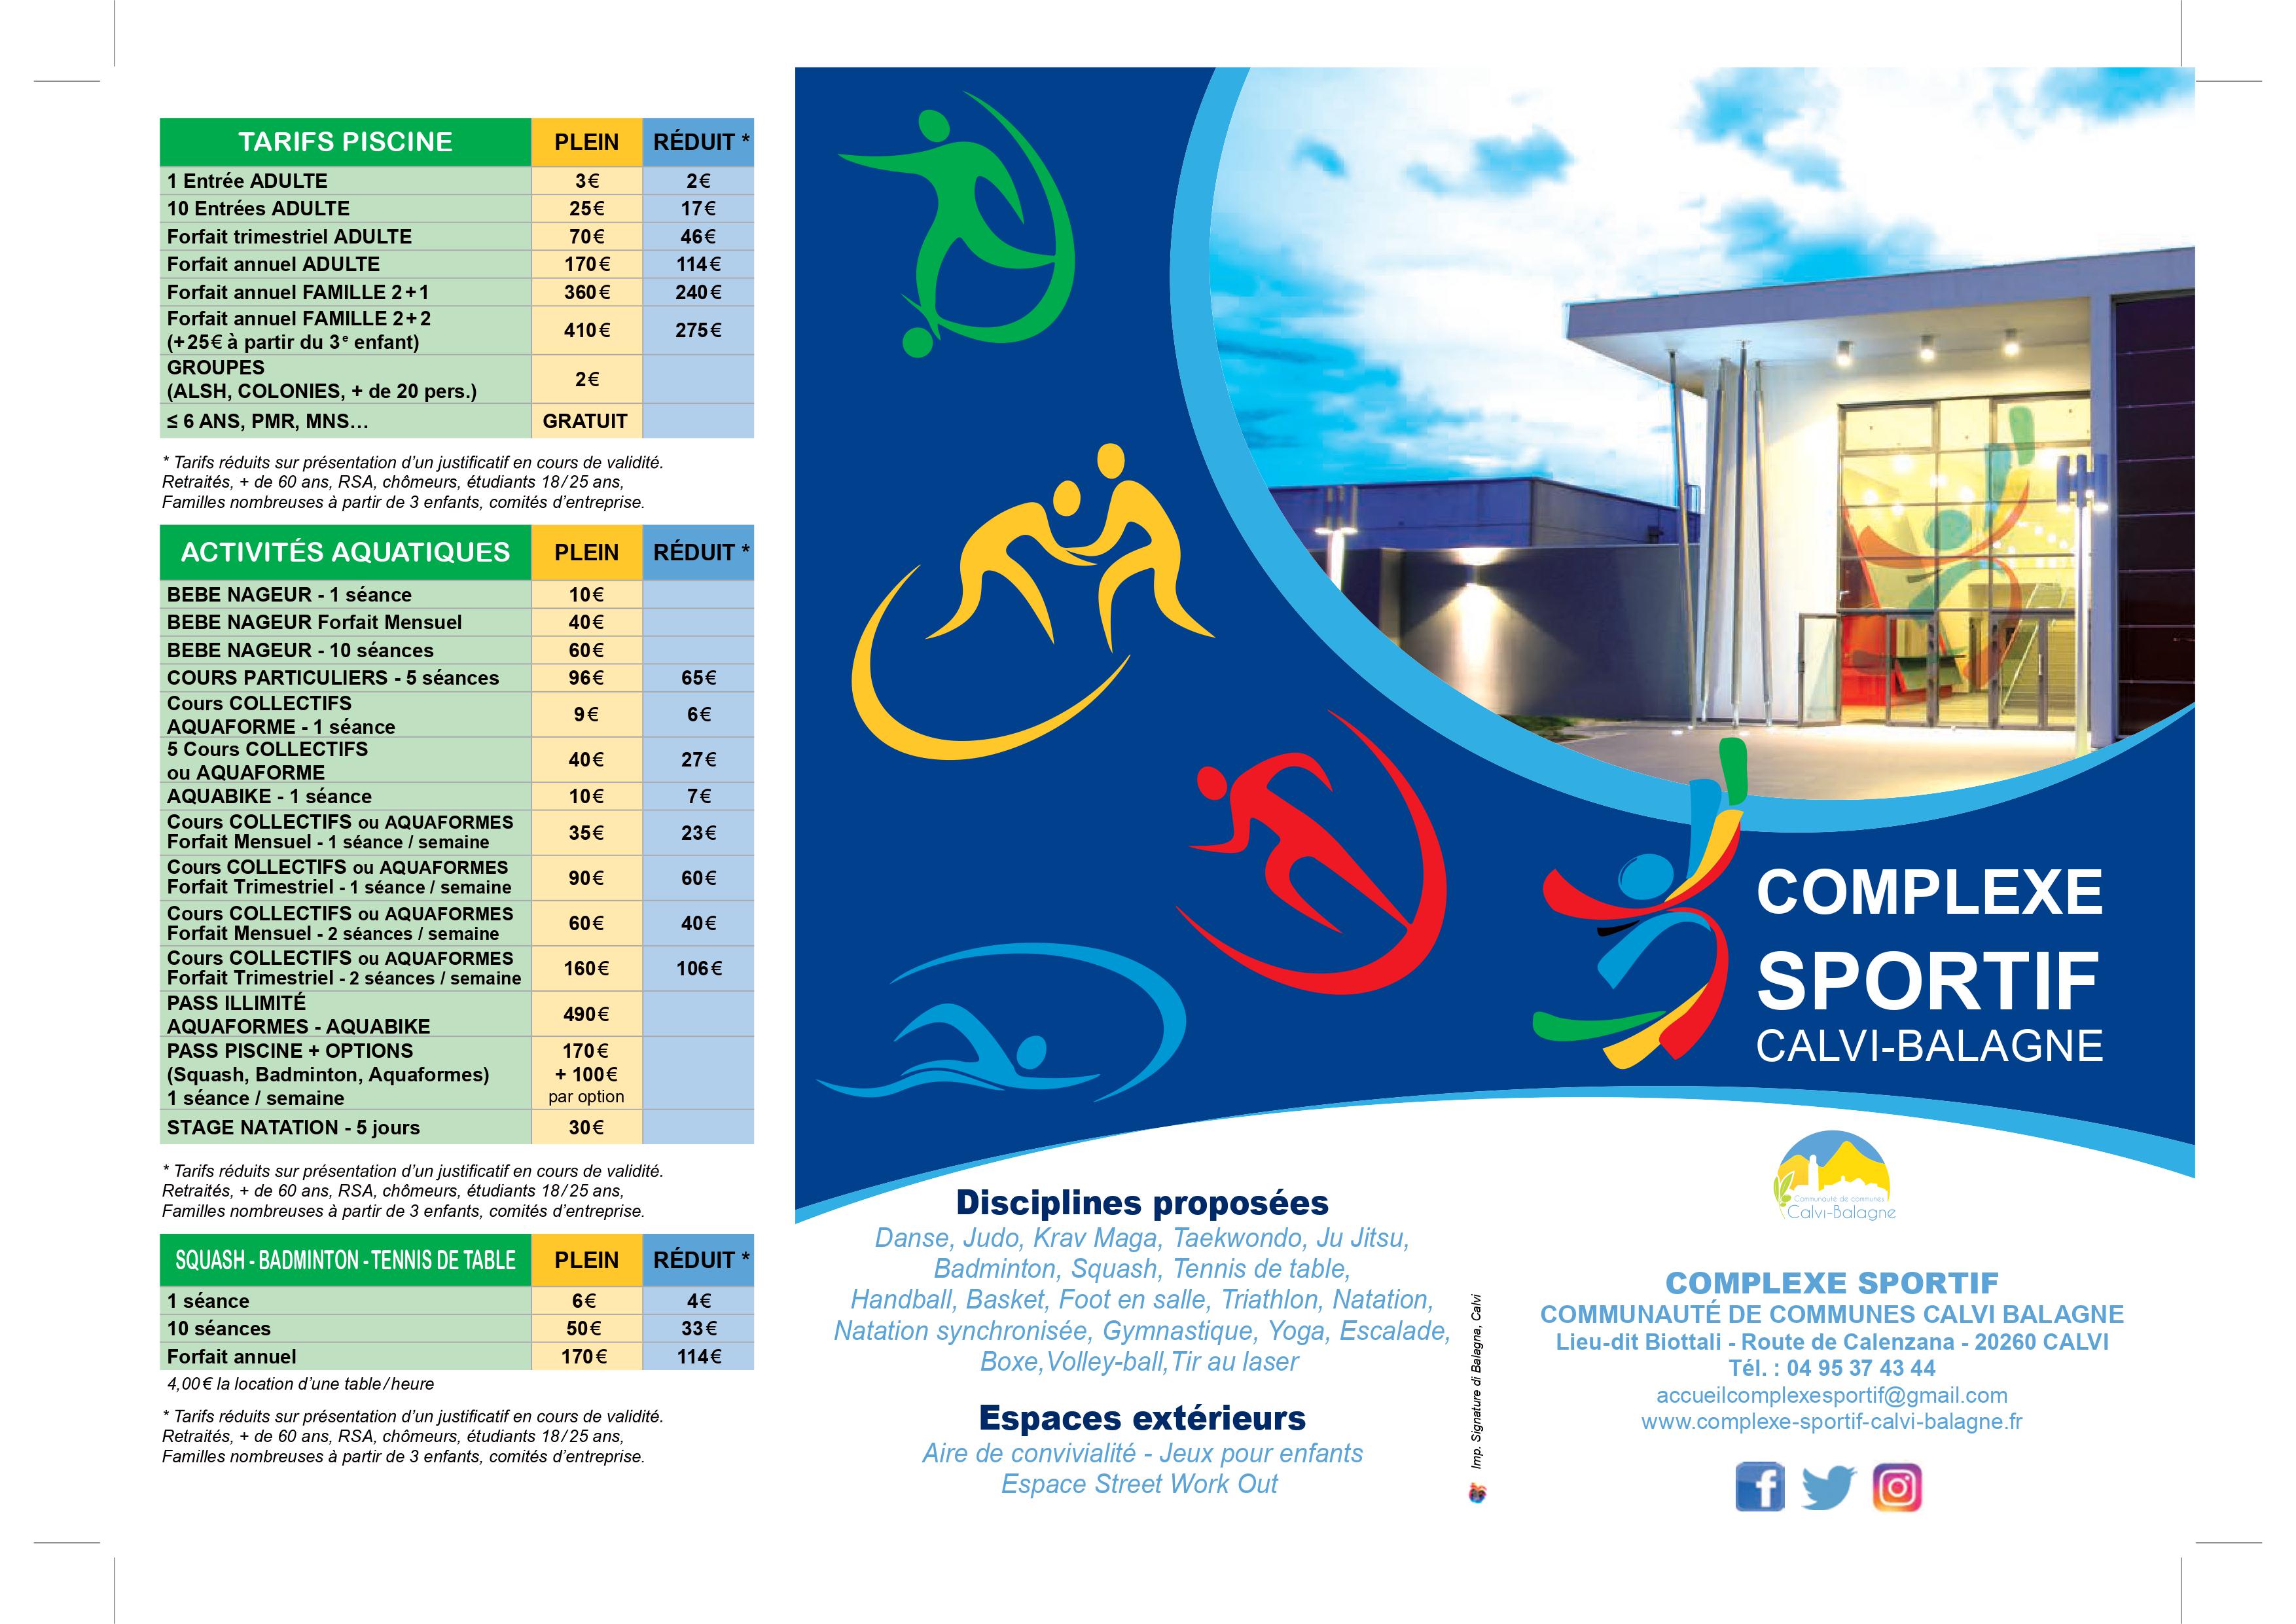 Réouverture du Complexe Sportif Calvi - Balagne le 24 août